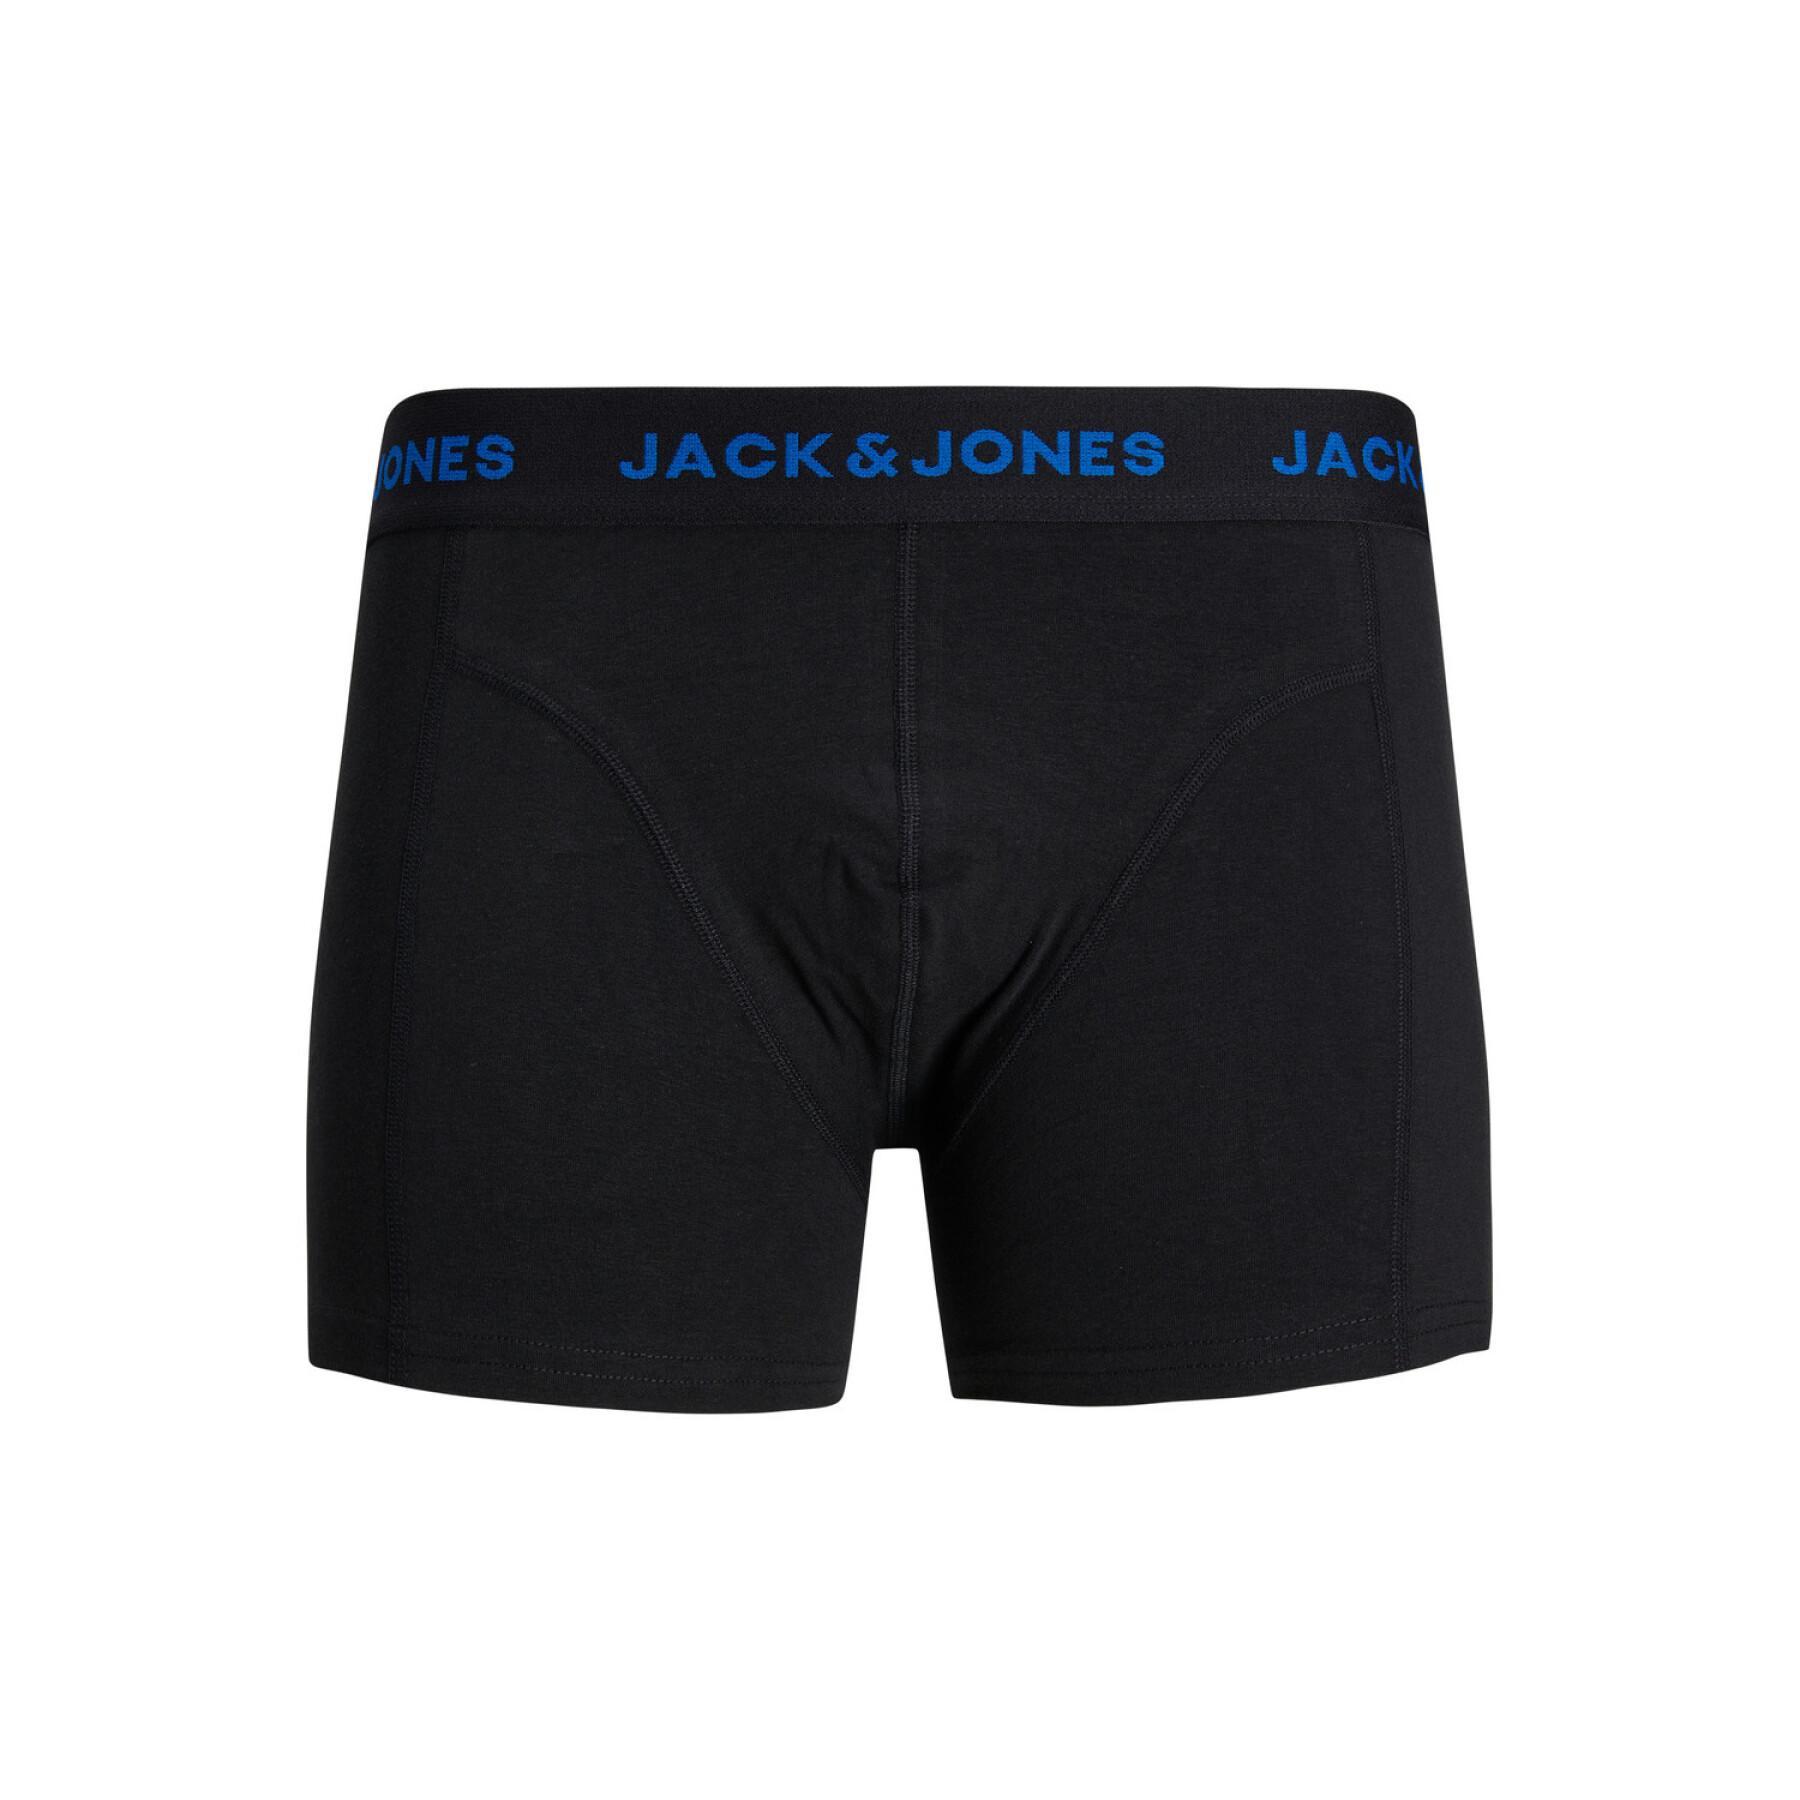 Set of 3 children's boxers Jack & Jones Cramp